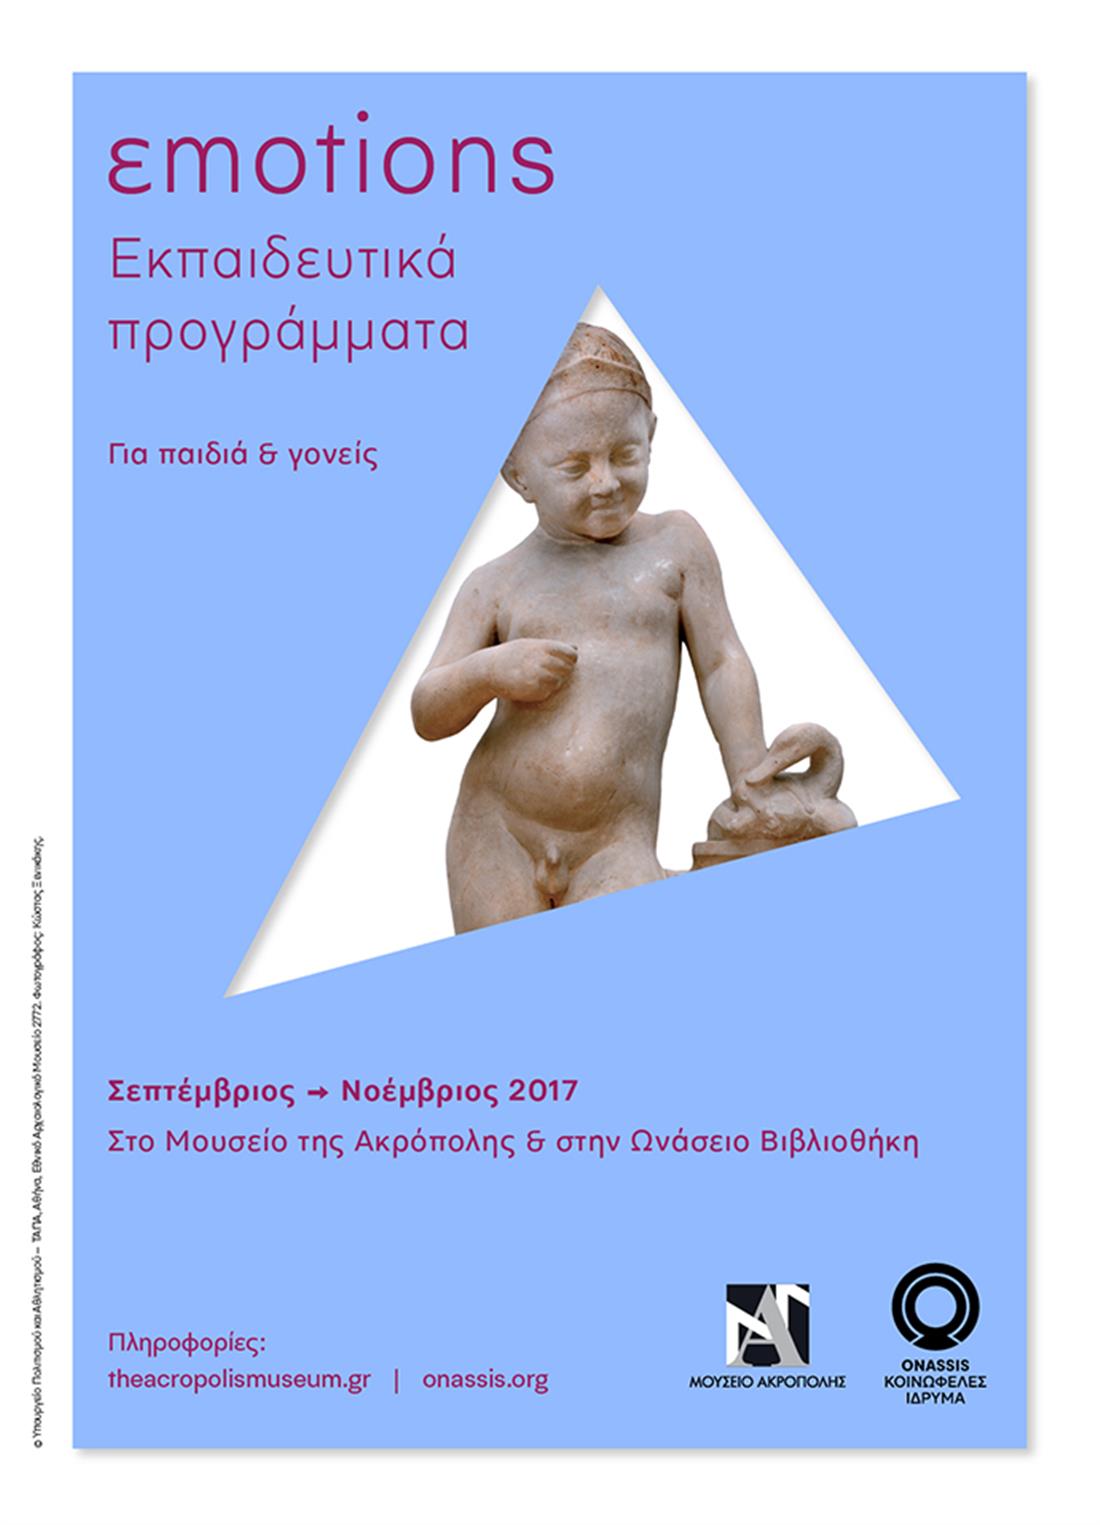 Εκπαιδευτικά προγράμματα για παιδιά - έκθεση «εmotions, ένας κόσμος συναισθημάτων» - Ίδρυμα Ωνάση - Μουσείο της Ακρόπολης